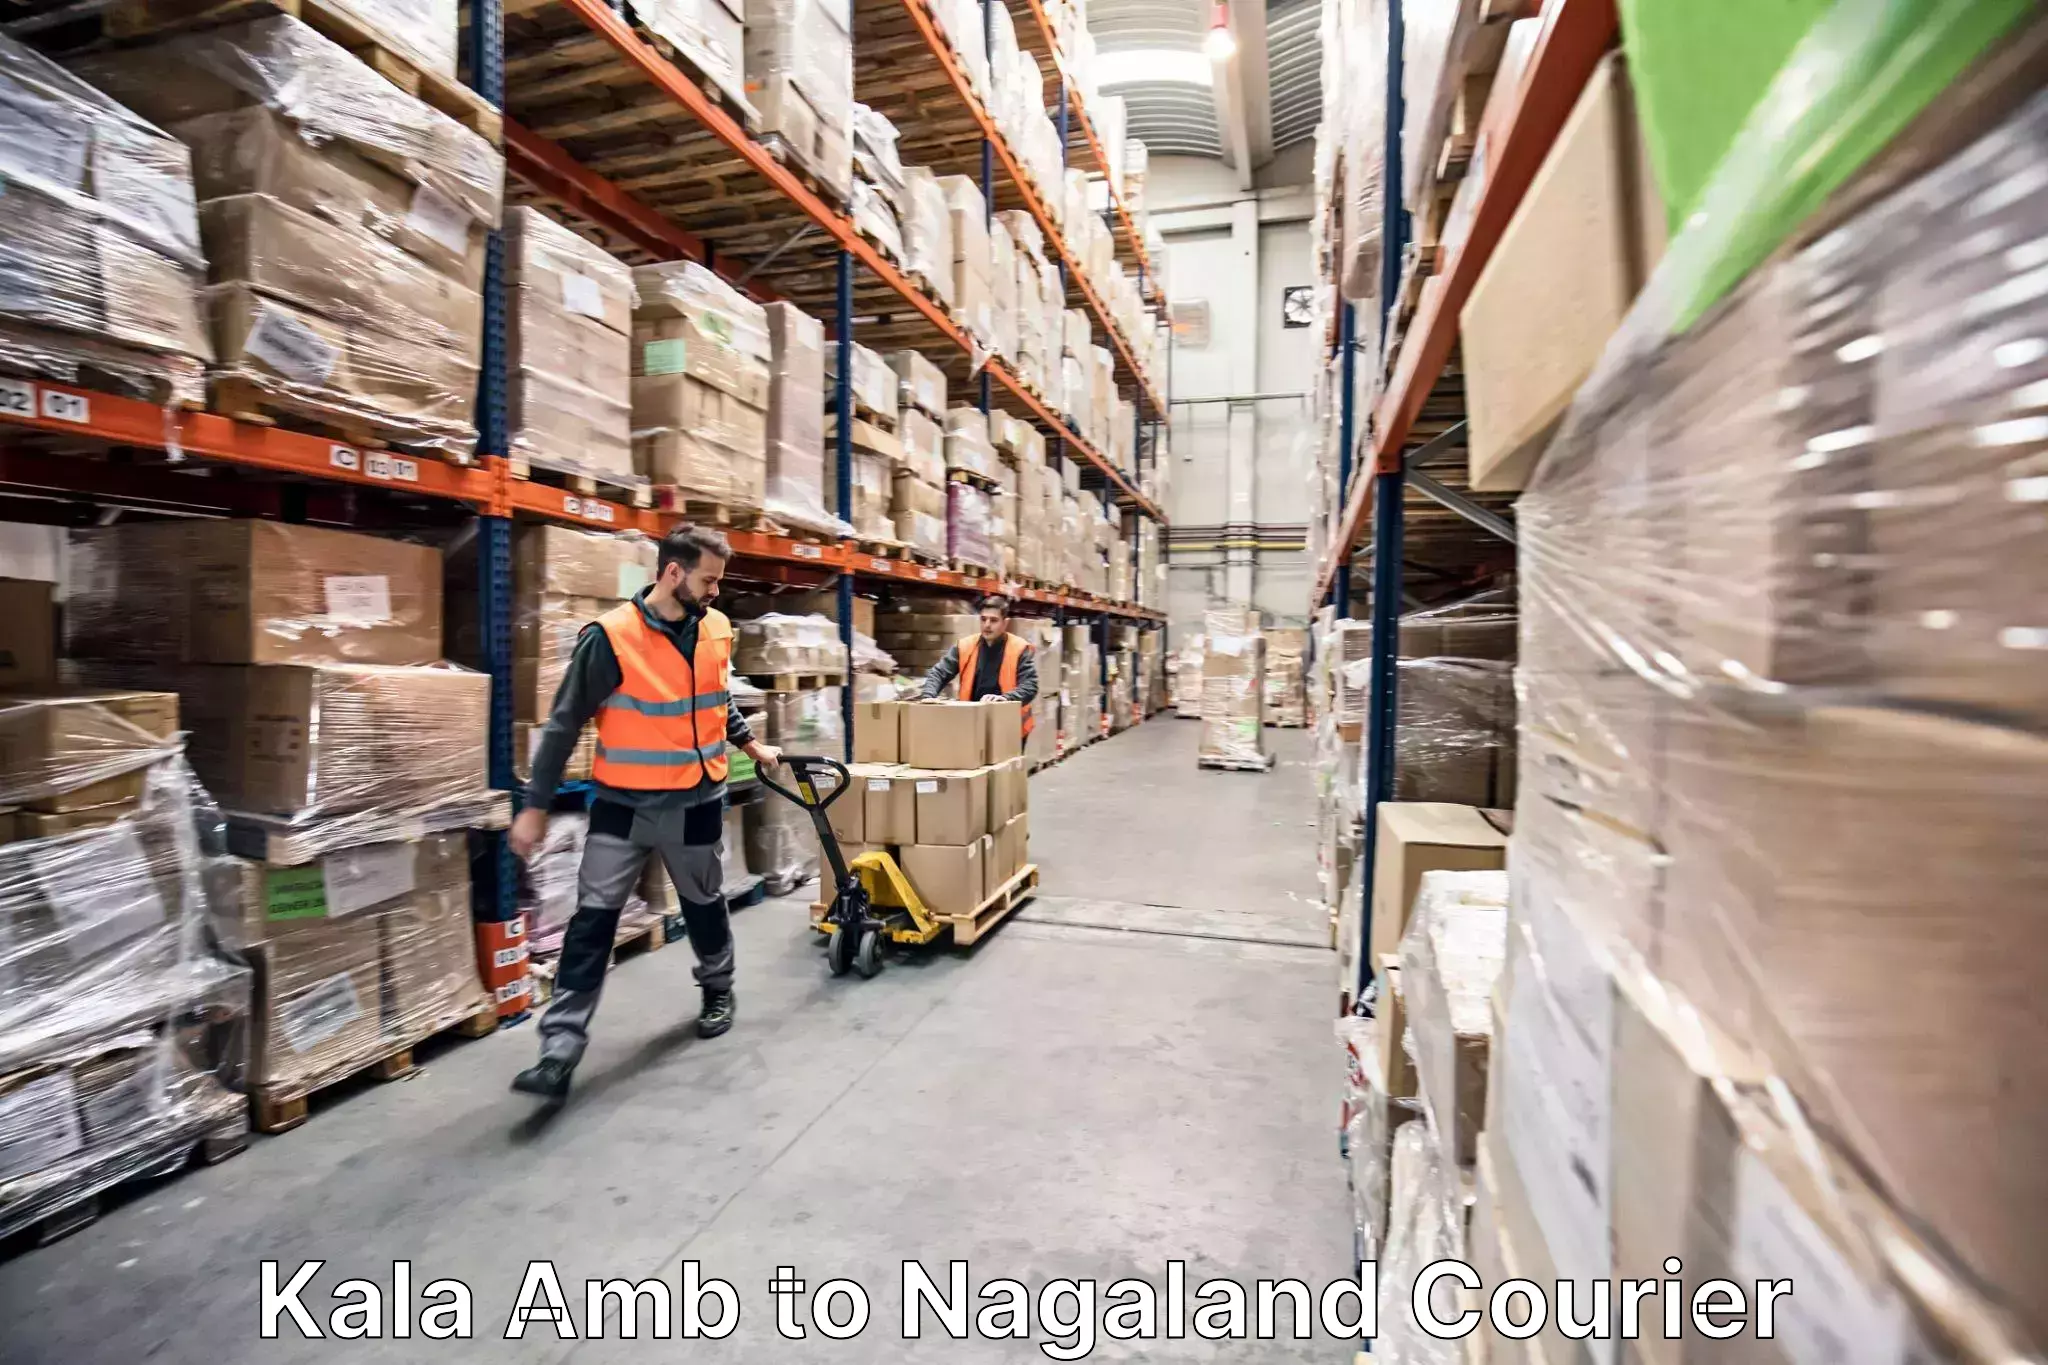 Skilled furniture movers Kala Amb to Nagaland